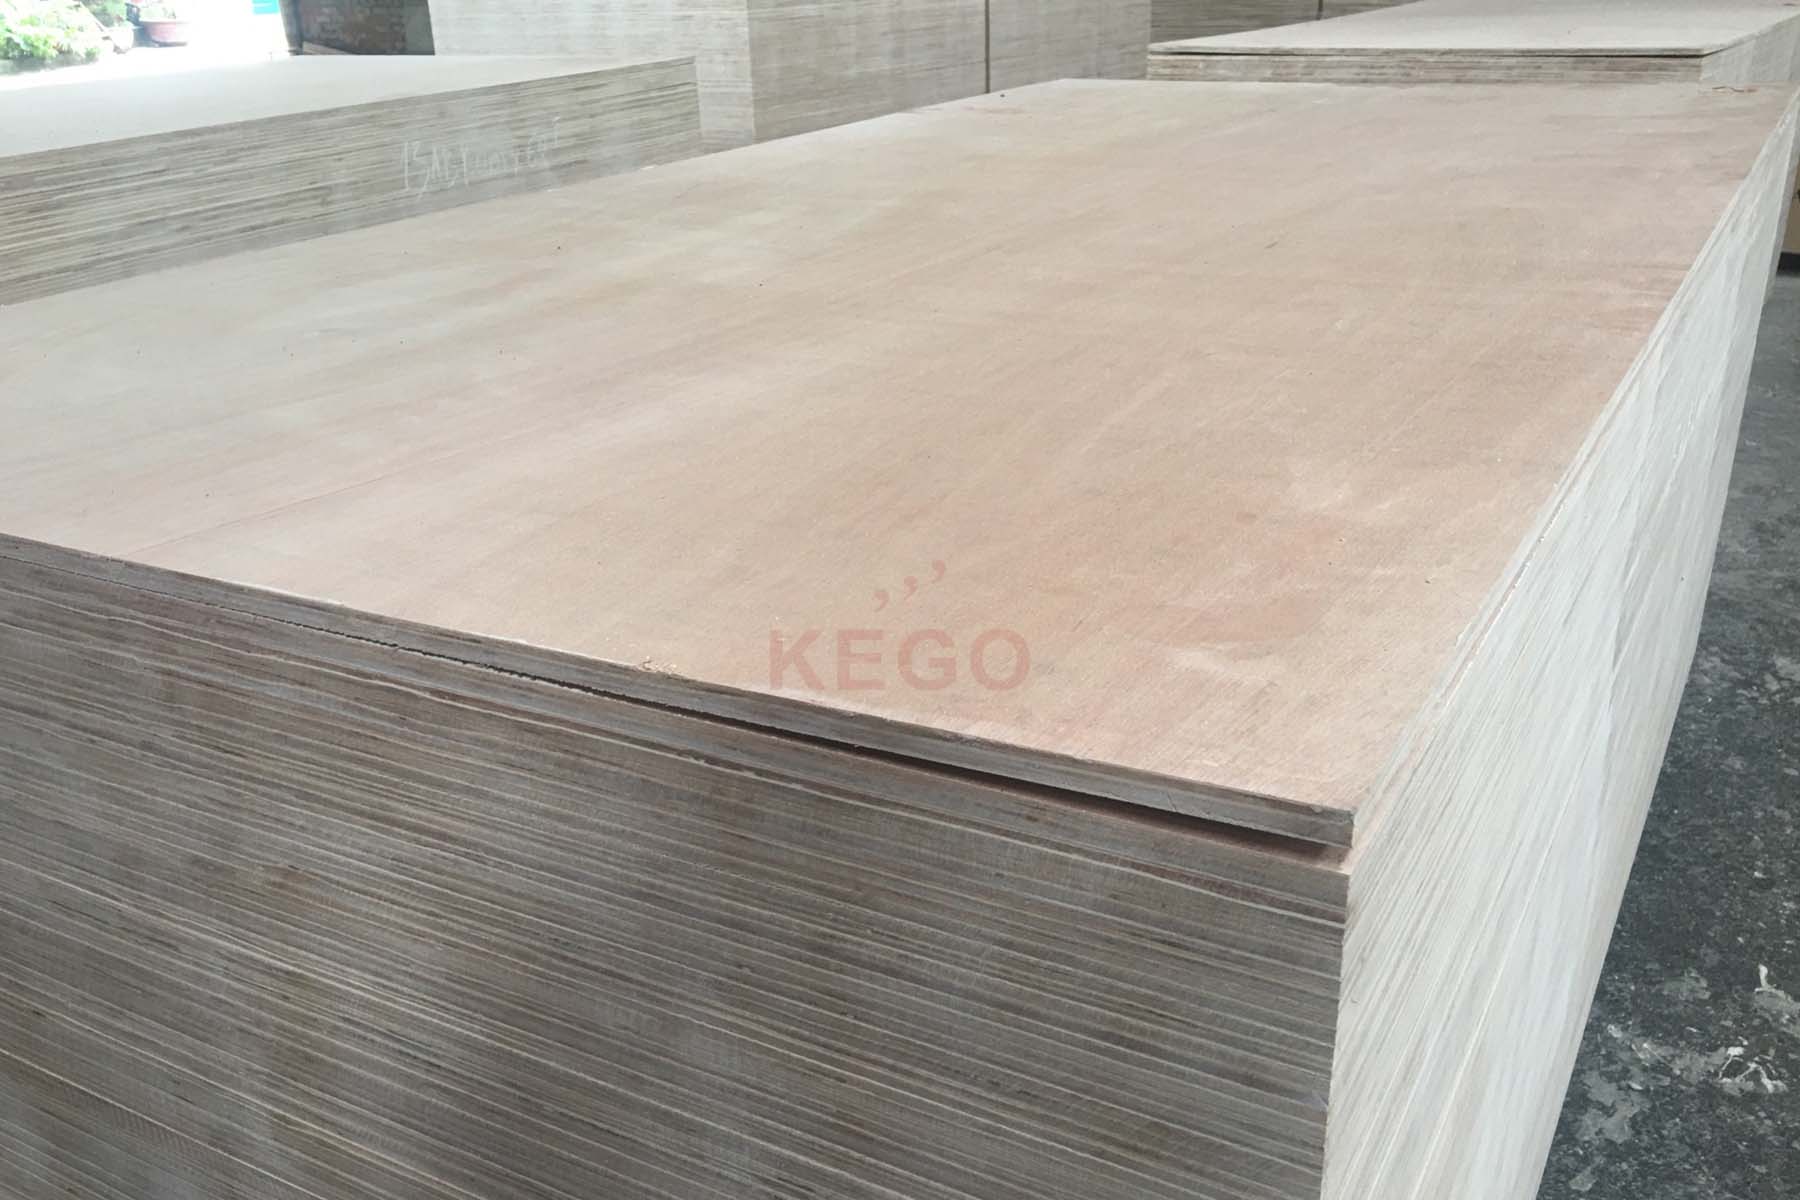 https://kego.com.vn/wp-content/uploads/2015/09/commercial-plywood-kego-12.jpg